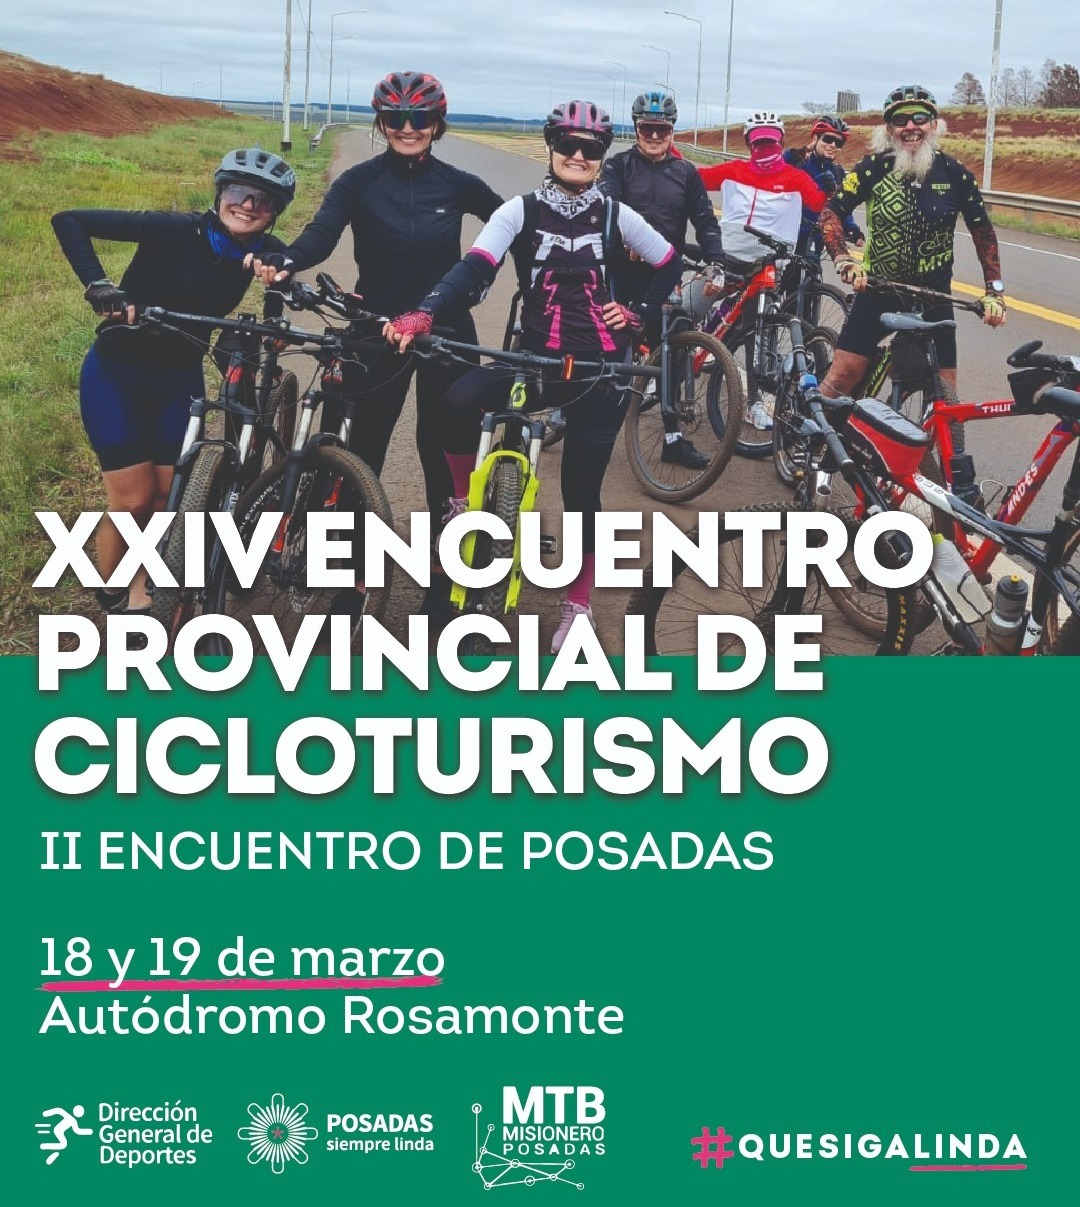 Ciudad Deportiva: Todo listo para el XXIV Encuentro Provincial de Cicloturismo imagen-1